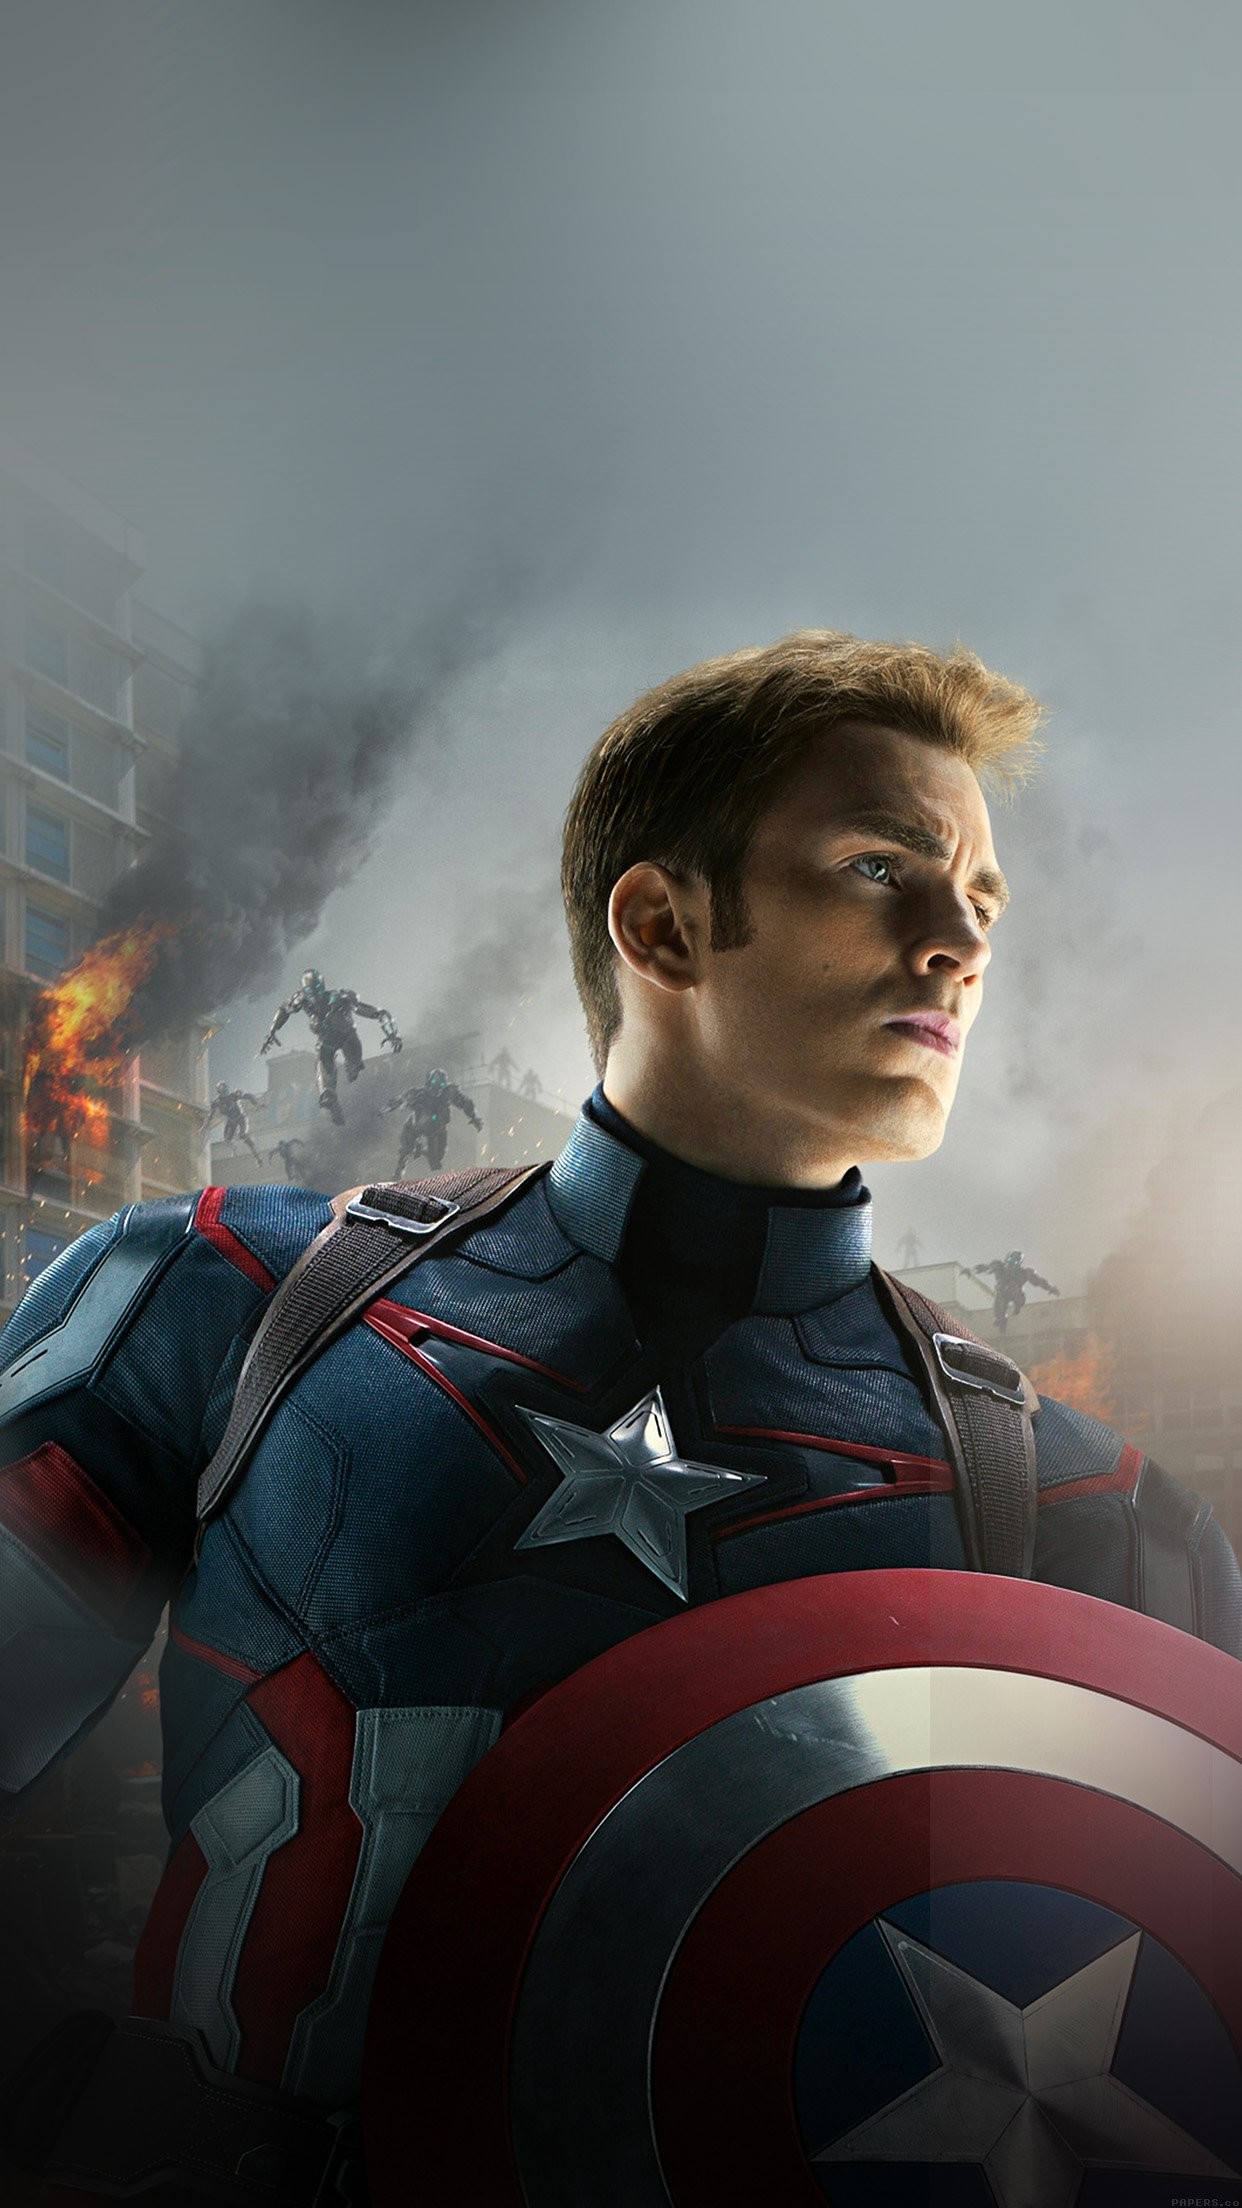 キャピタンアメリカ壁紙,スーパーヒーロー,キャプテン・アメリカ,架空の人物,ヒーロー,映画